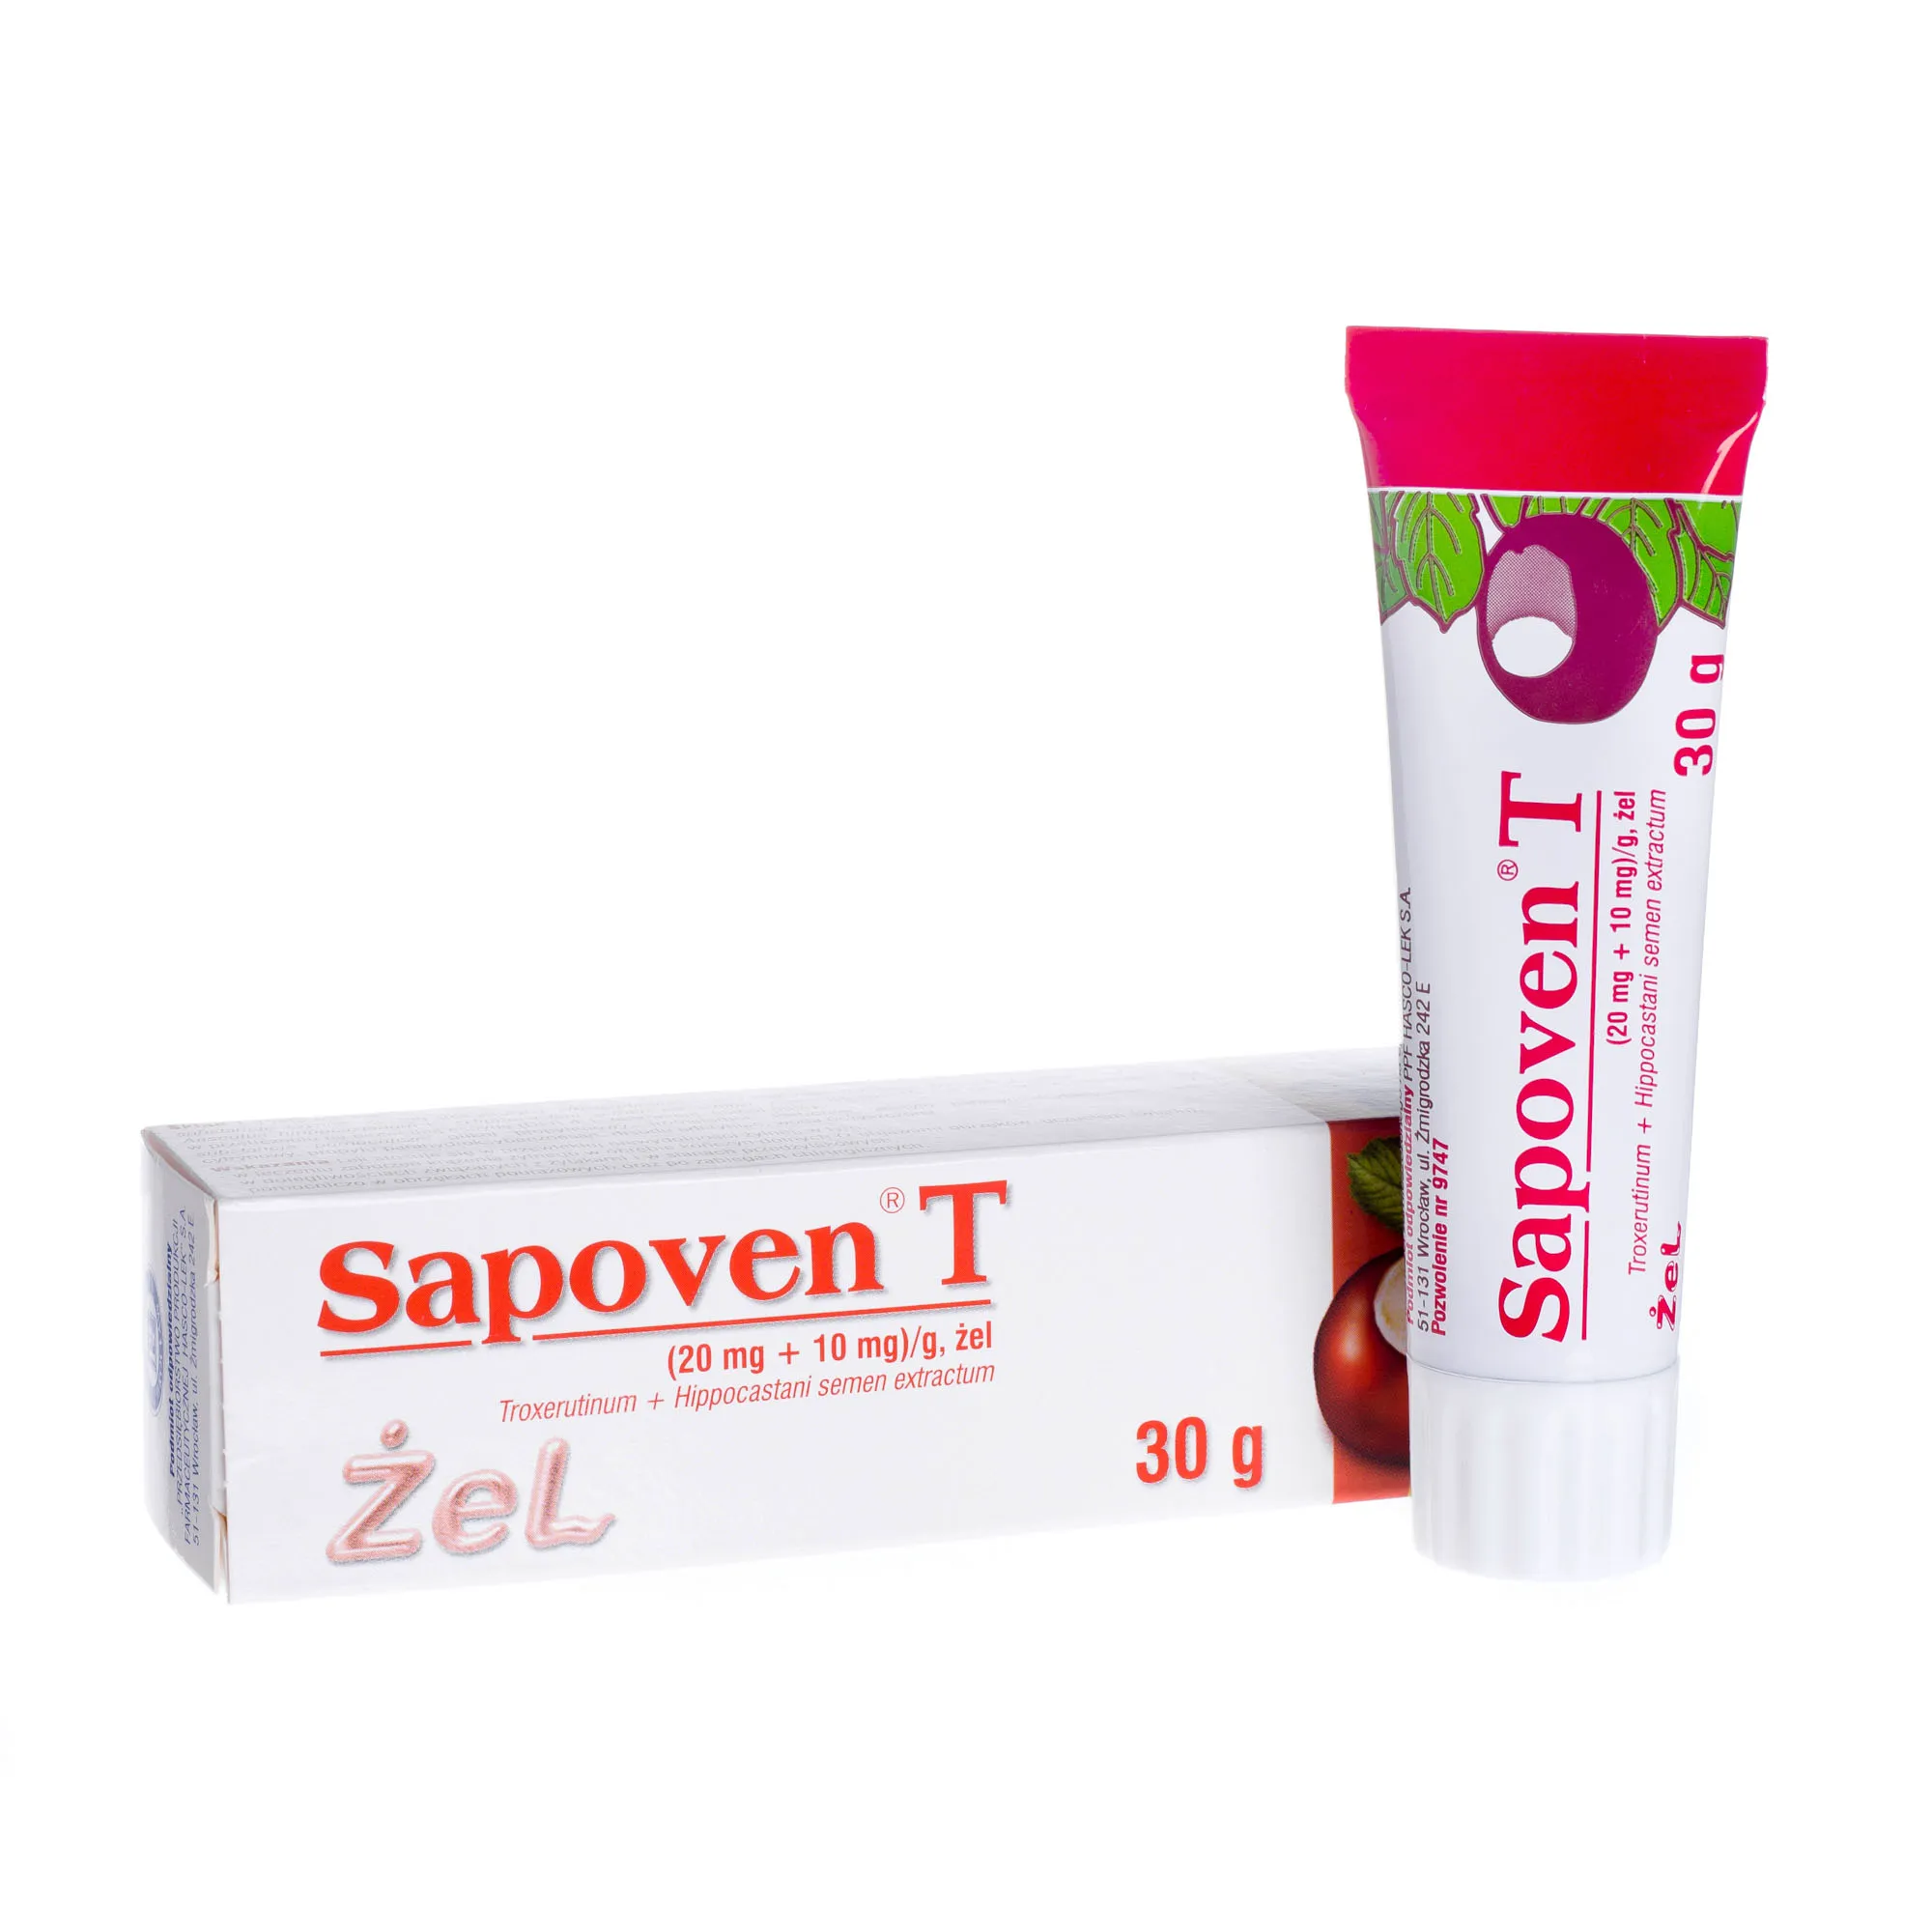 Sapoven T(20 mg + 10mg)/g, żel, 30 g 